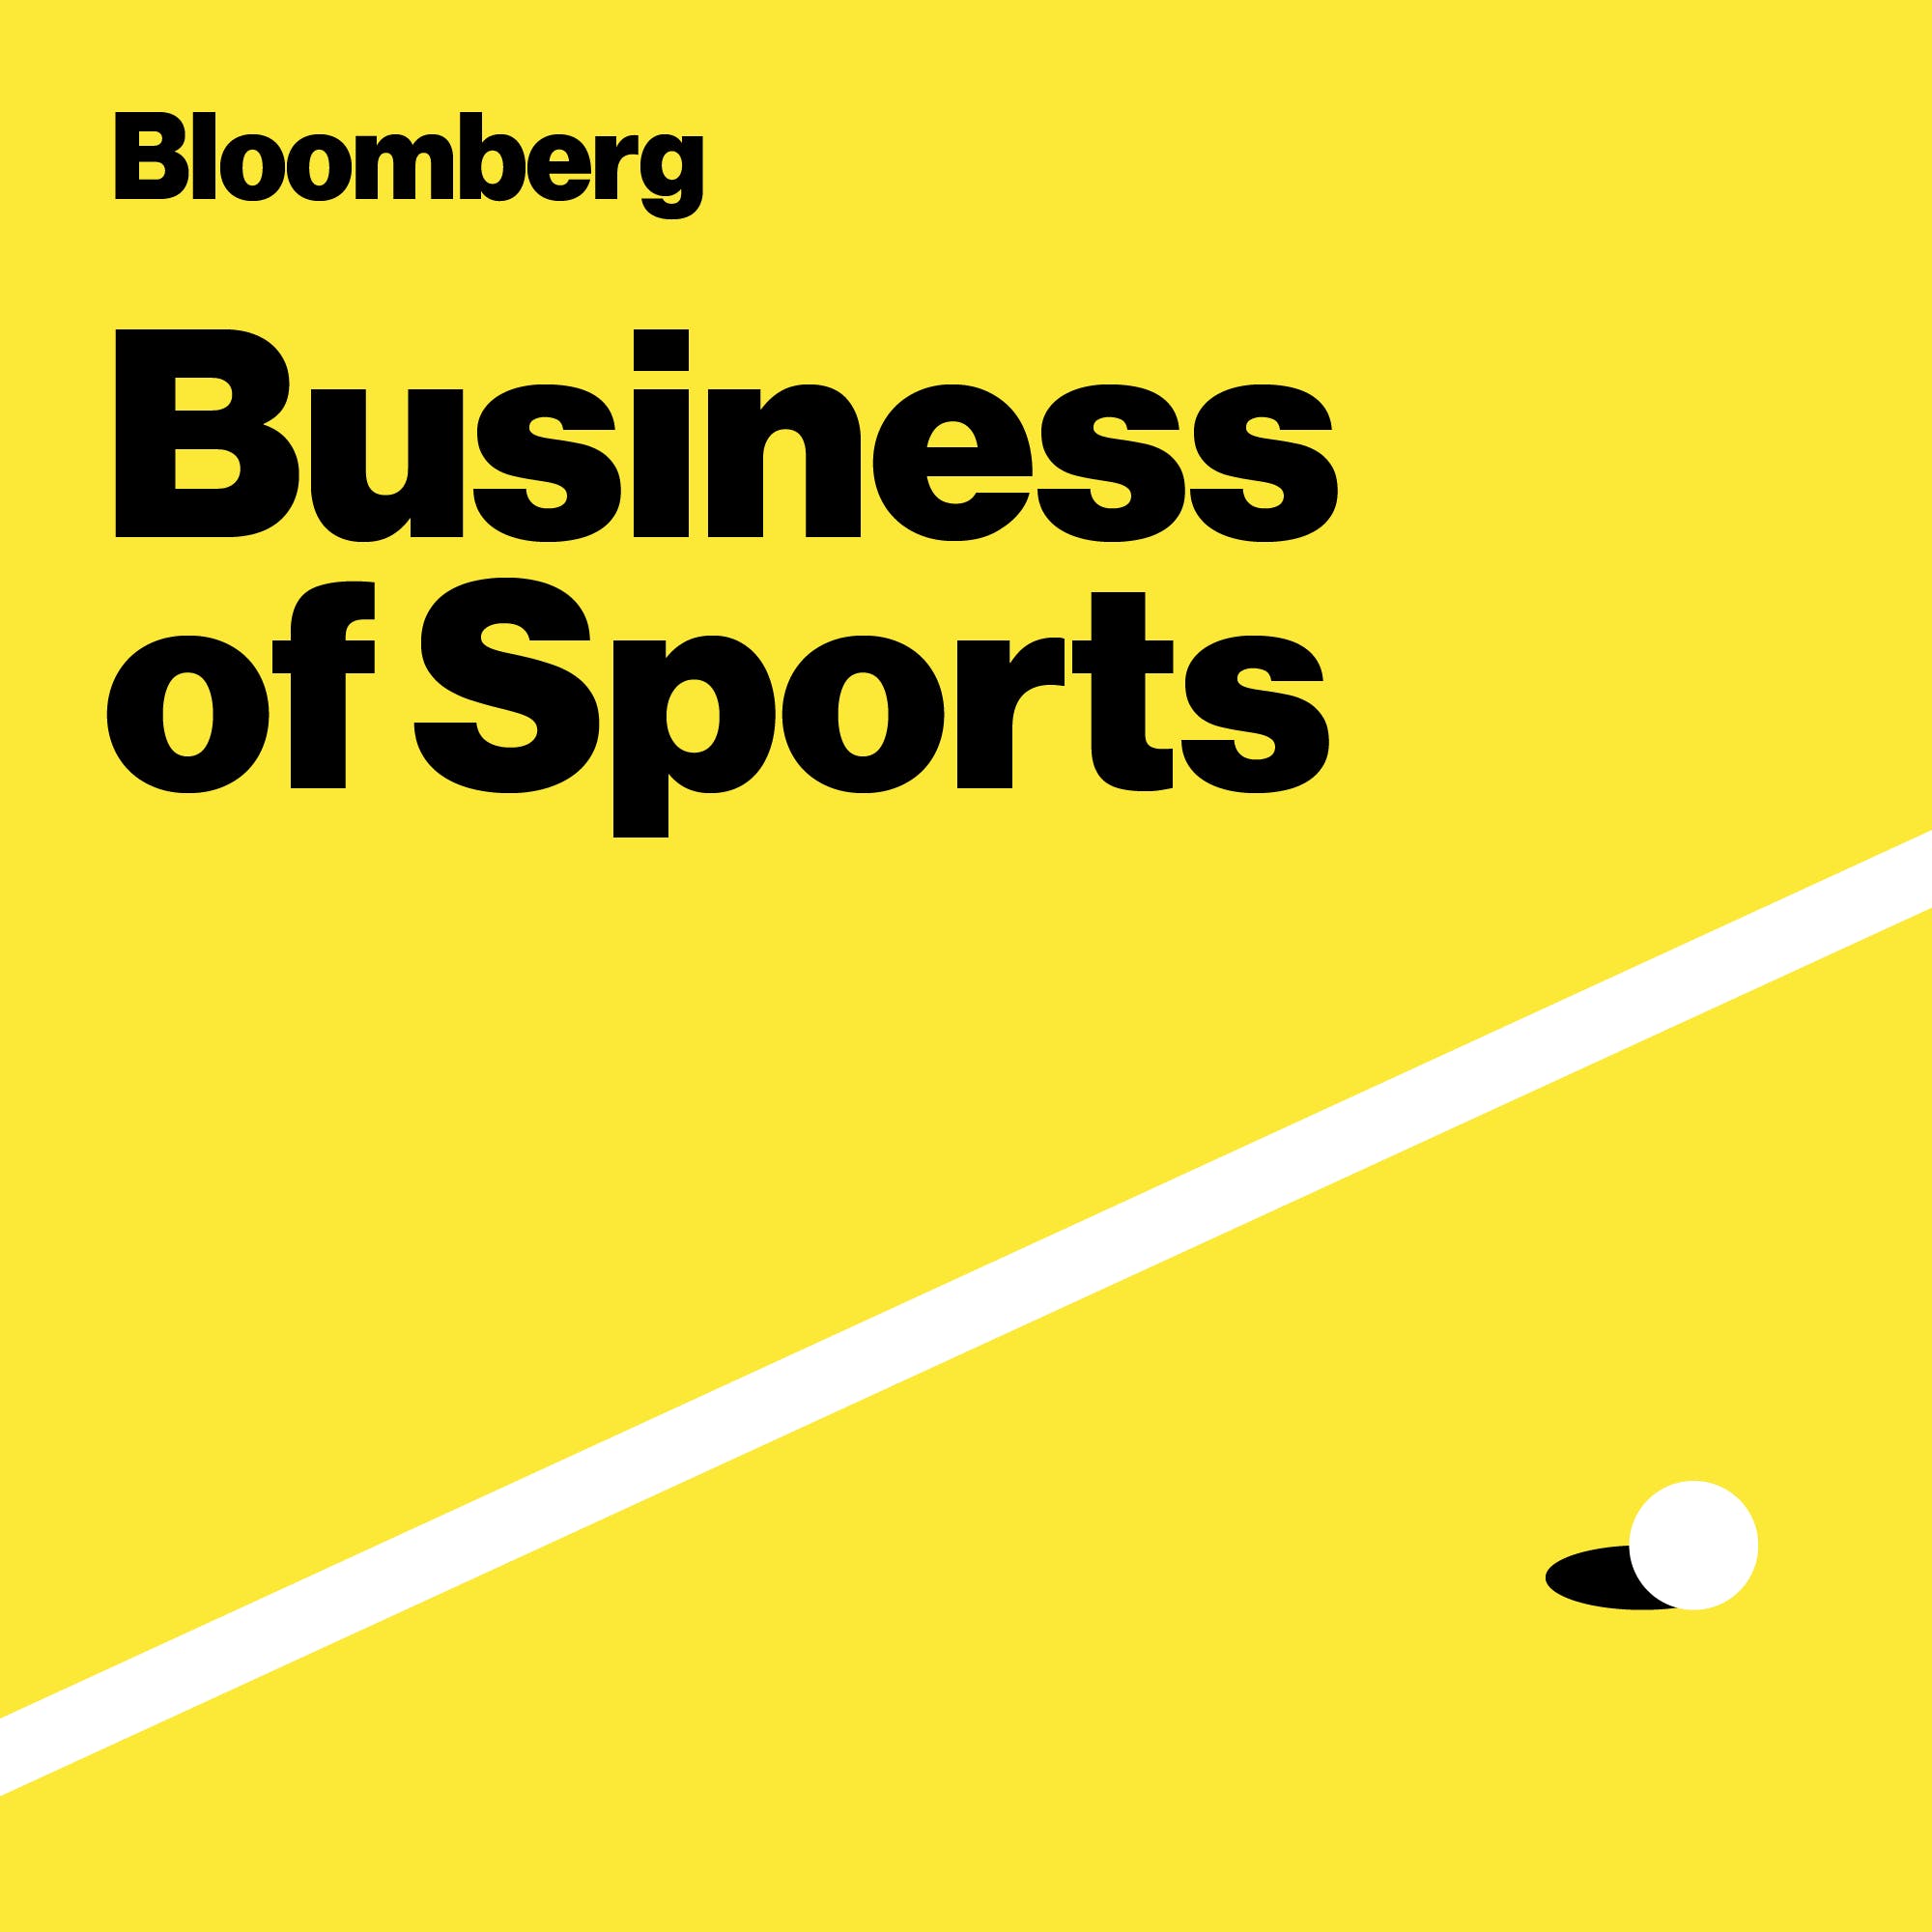 BONUS:  NBA Star Giannis Antetokounmpo Getting Into The ETF Business